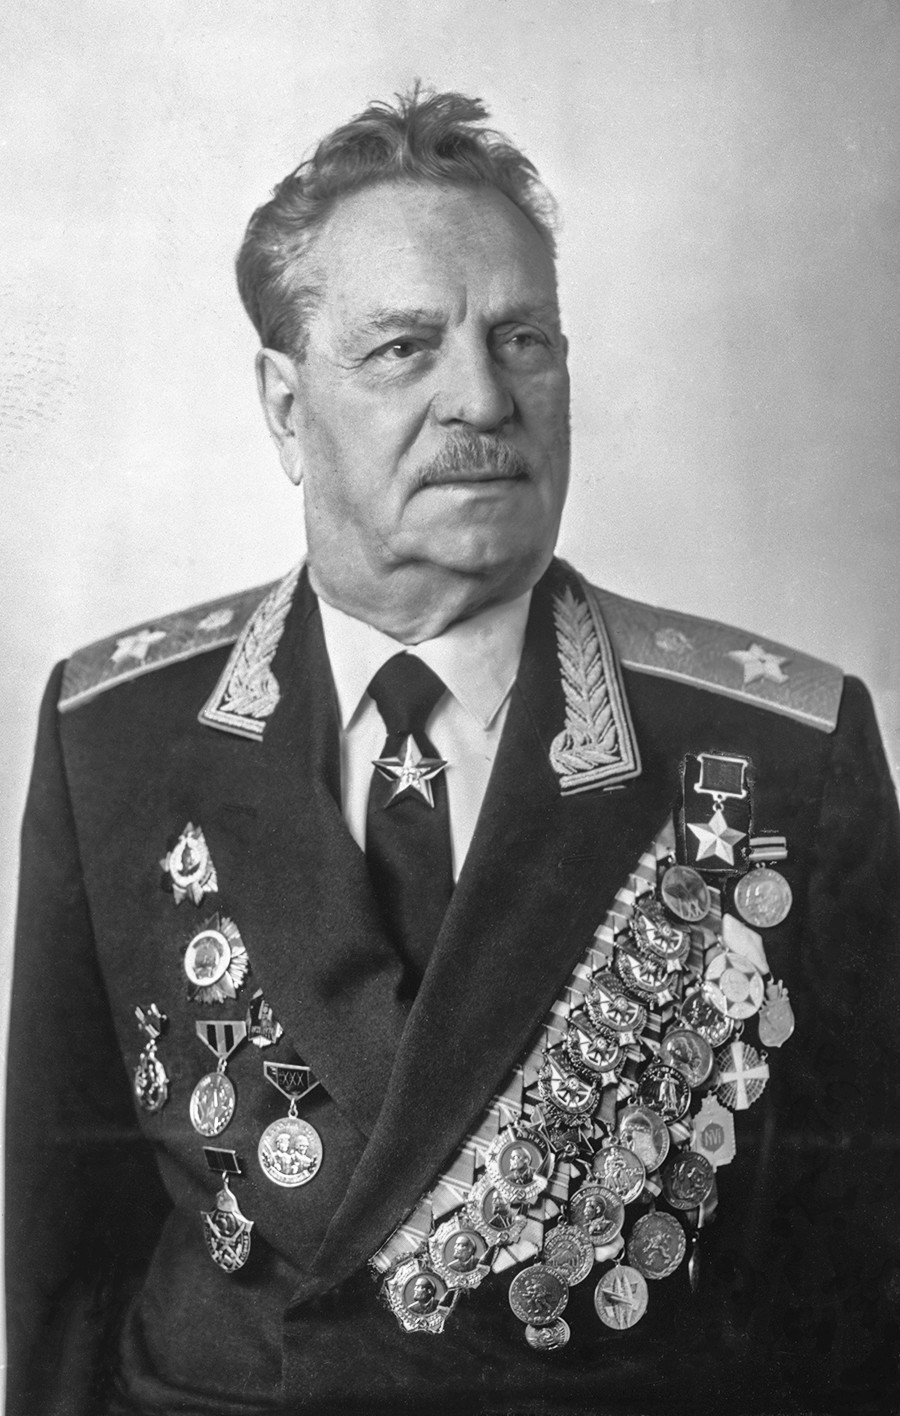 Junak Sovjetske zveze general Ivan Vladimirovič Tjulenjev. 18. avgusta 1978